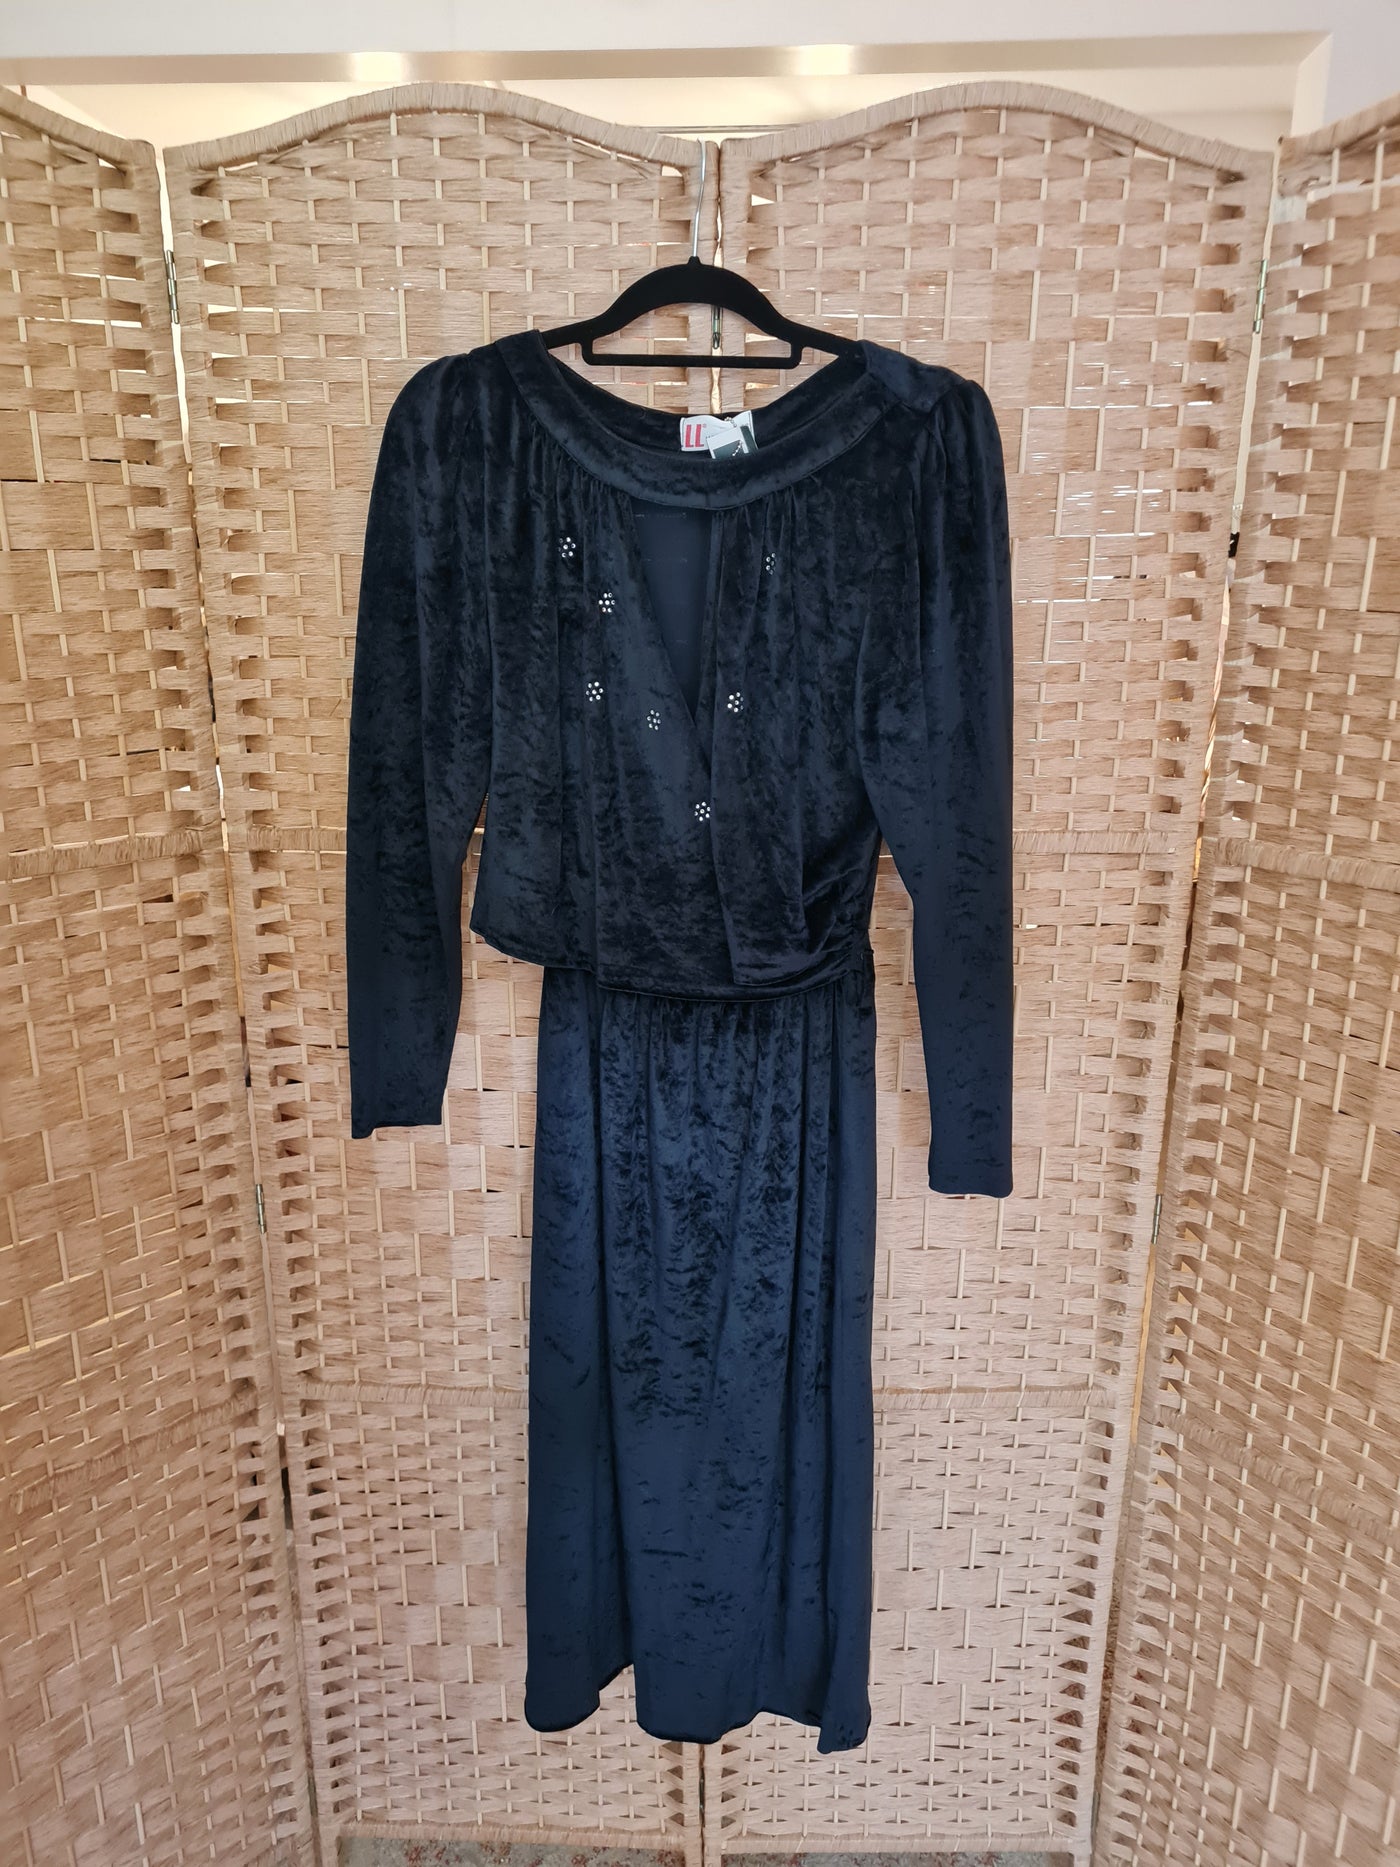 Lucie Linden Black Velvet dress 10